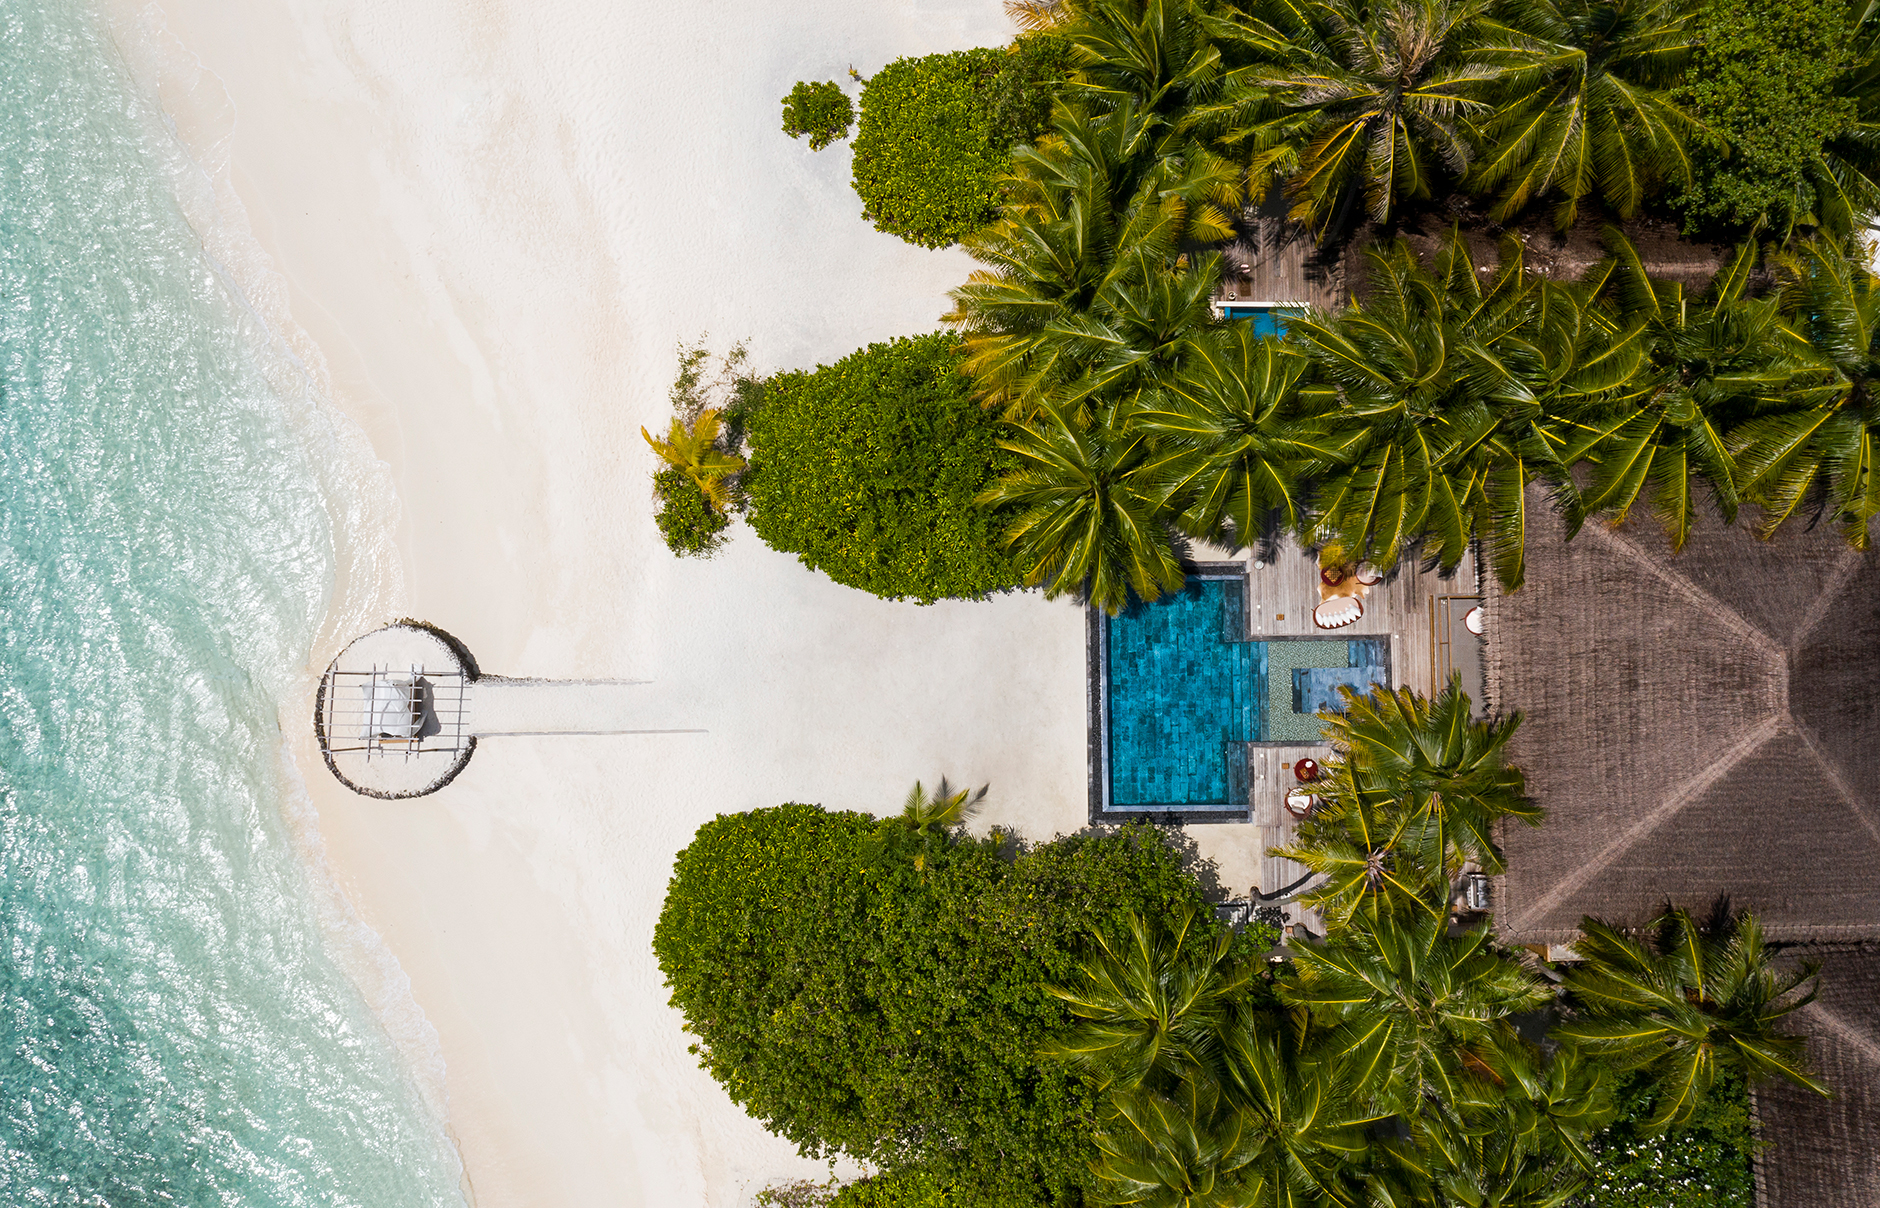 Huvafen Fushi Maldives. Luxury Hotel Review by TravelPlusStyle. Photo © Huvafen Fushi 